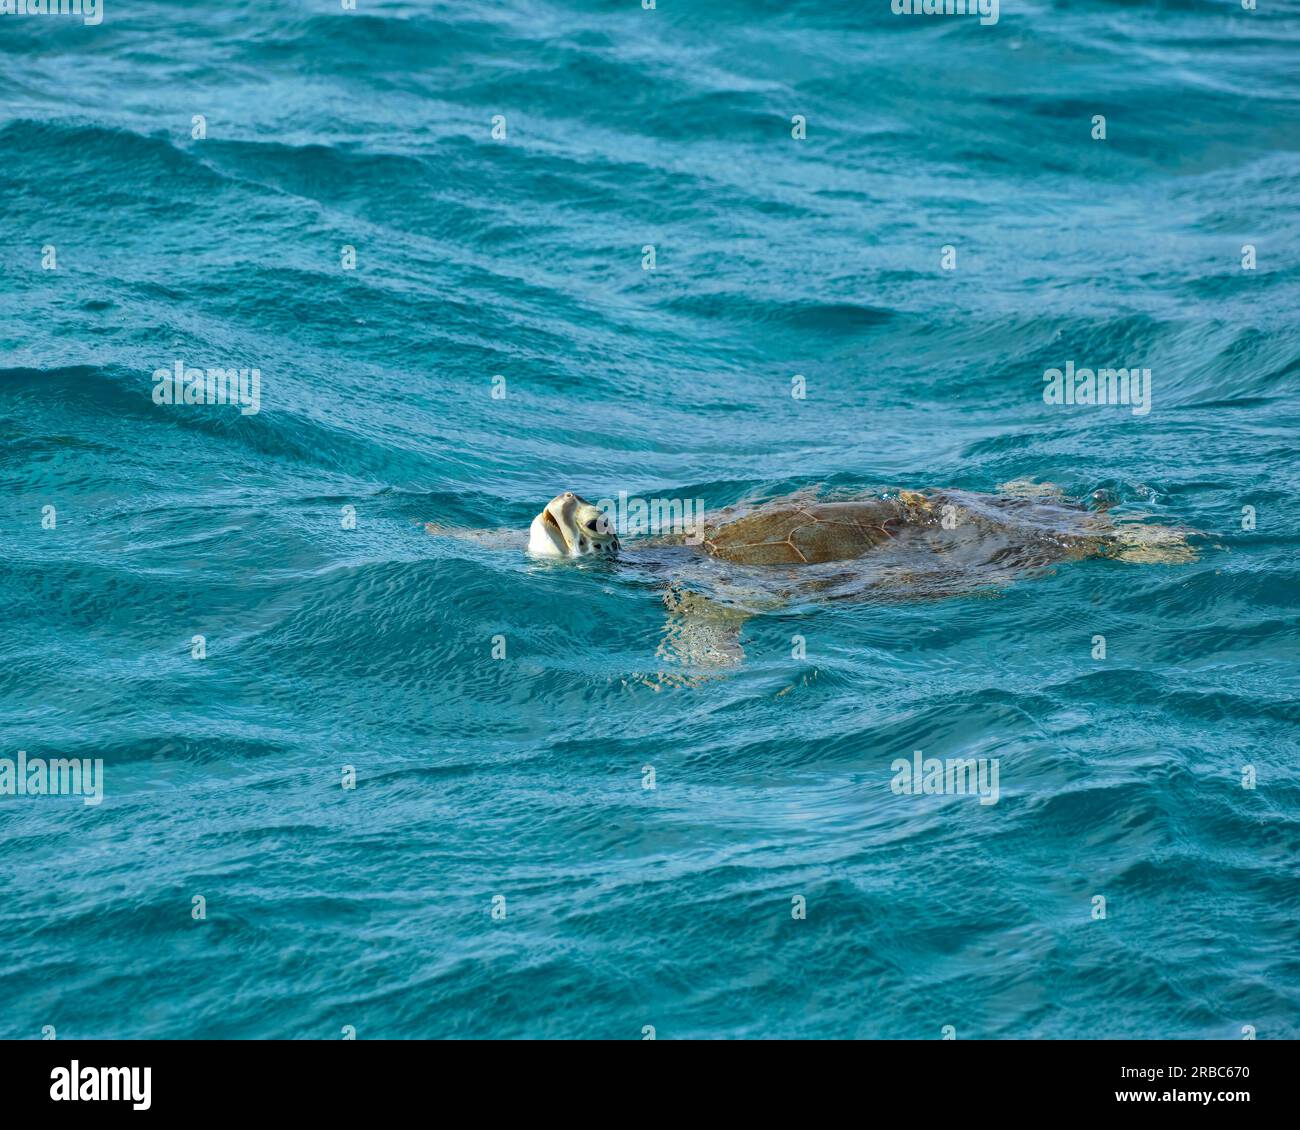 Une tortue verte nage à la surface de l'eau turquoise de la mer des Caraïbes à Tobago Cays, St. Vincent et les Grenadines Banque D'Images